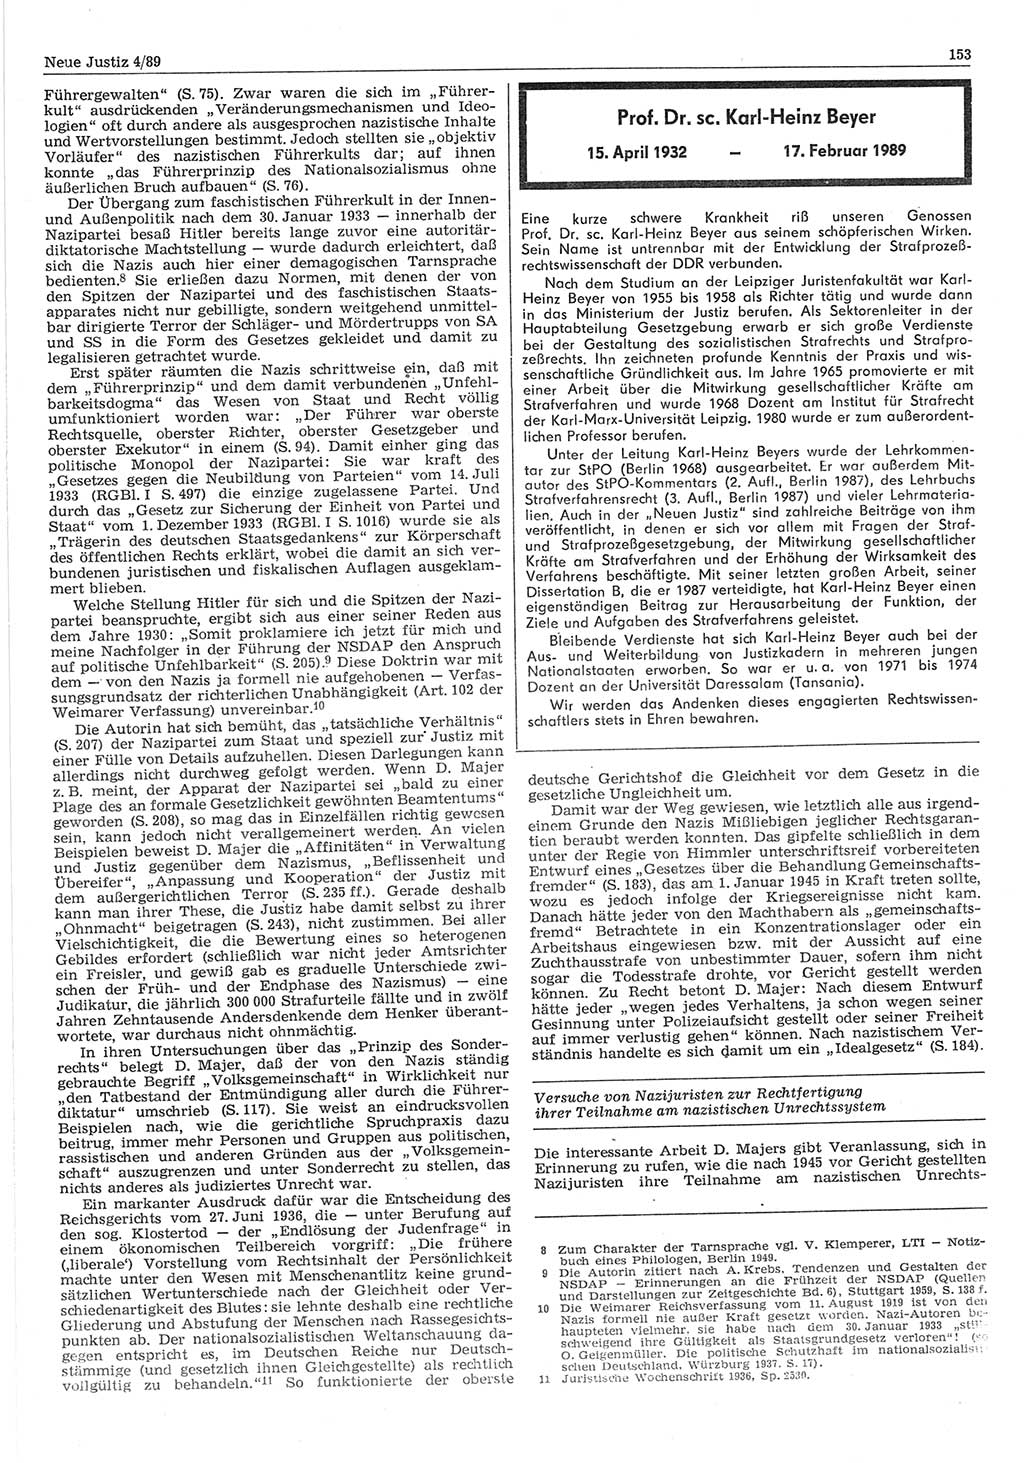 Neue Justiz (NJ), Zeitschrift für sozialistisches Recht und Gesetzlichkeit [Deutsche Demokratische Republik (DDR)], 43. Jahrgang 1989, Seite 153 (NJ DDR 1989, S. 153)